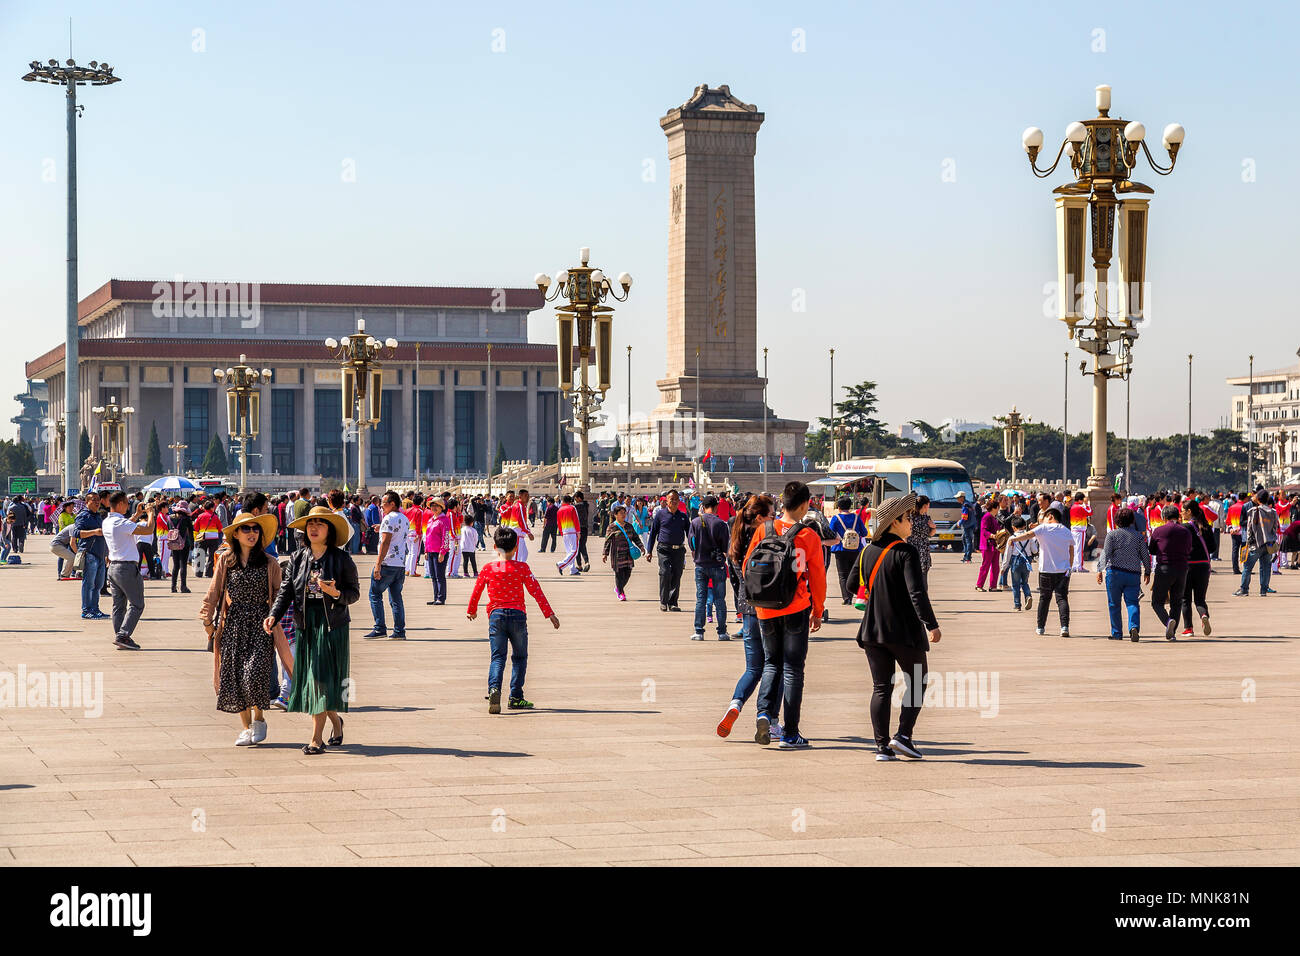 Il monumento al popolo gli eroi sopra torri ai visitatori di piazza Tiananmen. Alle sue spalle sorge il Mausoleo di Mao Zedong. Pechino, Cina. Foto Stock